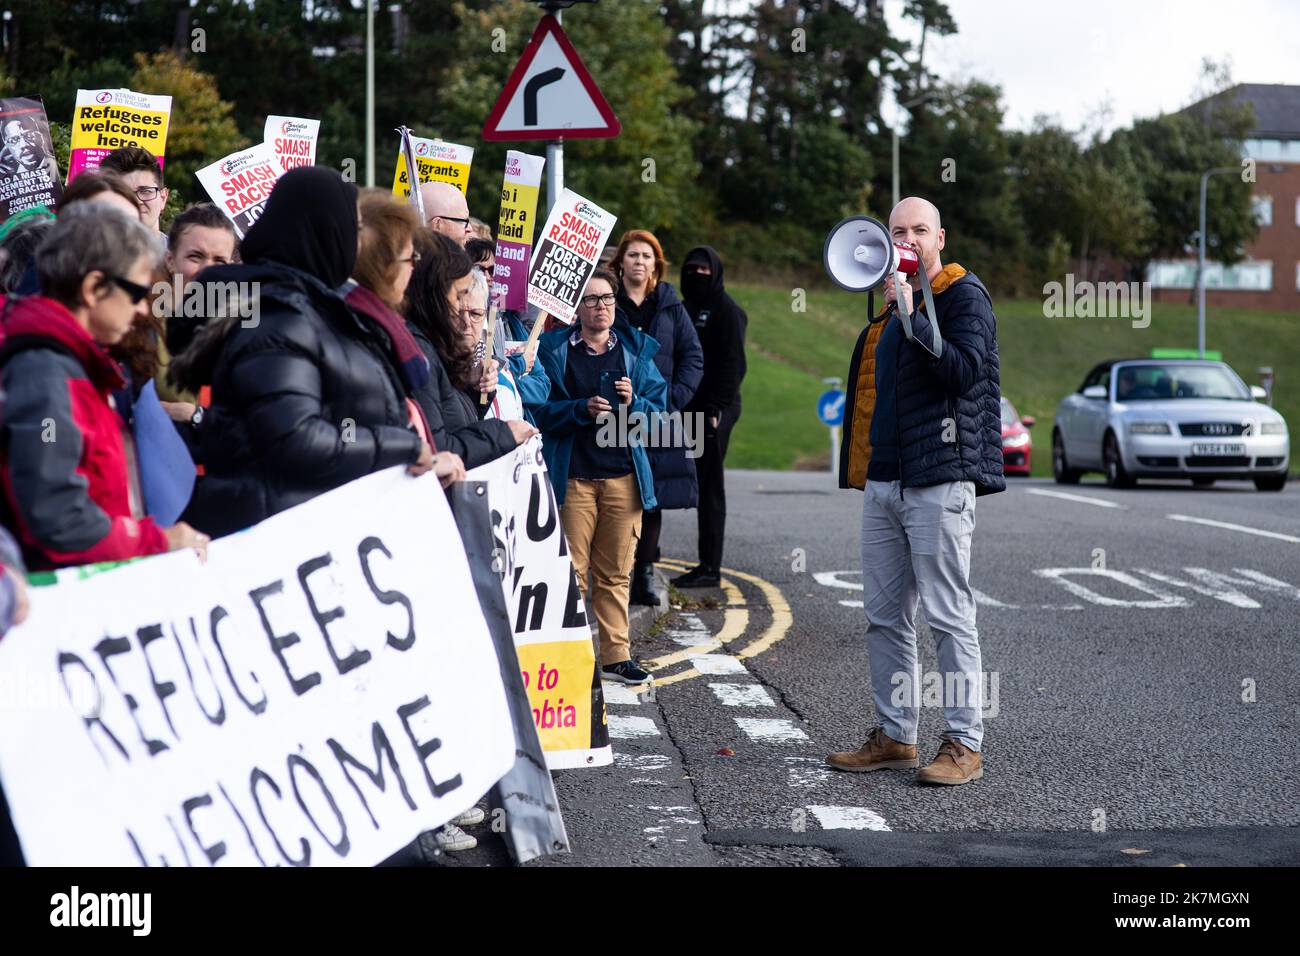 Démo « réfugiés Welcome » au Holiday Inn de Cardiff. Les manifestants se sont rassemblés pour montrer leur soutien et leur accueil aux réfugiés séjournant à Holiday Inn en raison d'une marche opposée attendue par des fascistes qui n'ont pas eu lieu. Banque D'Images